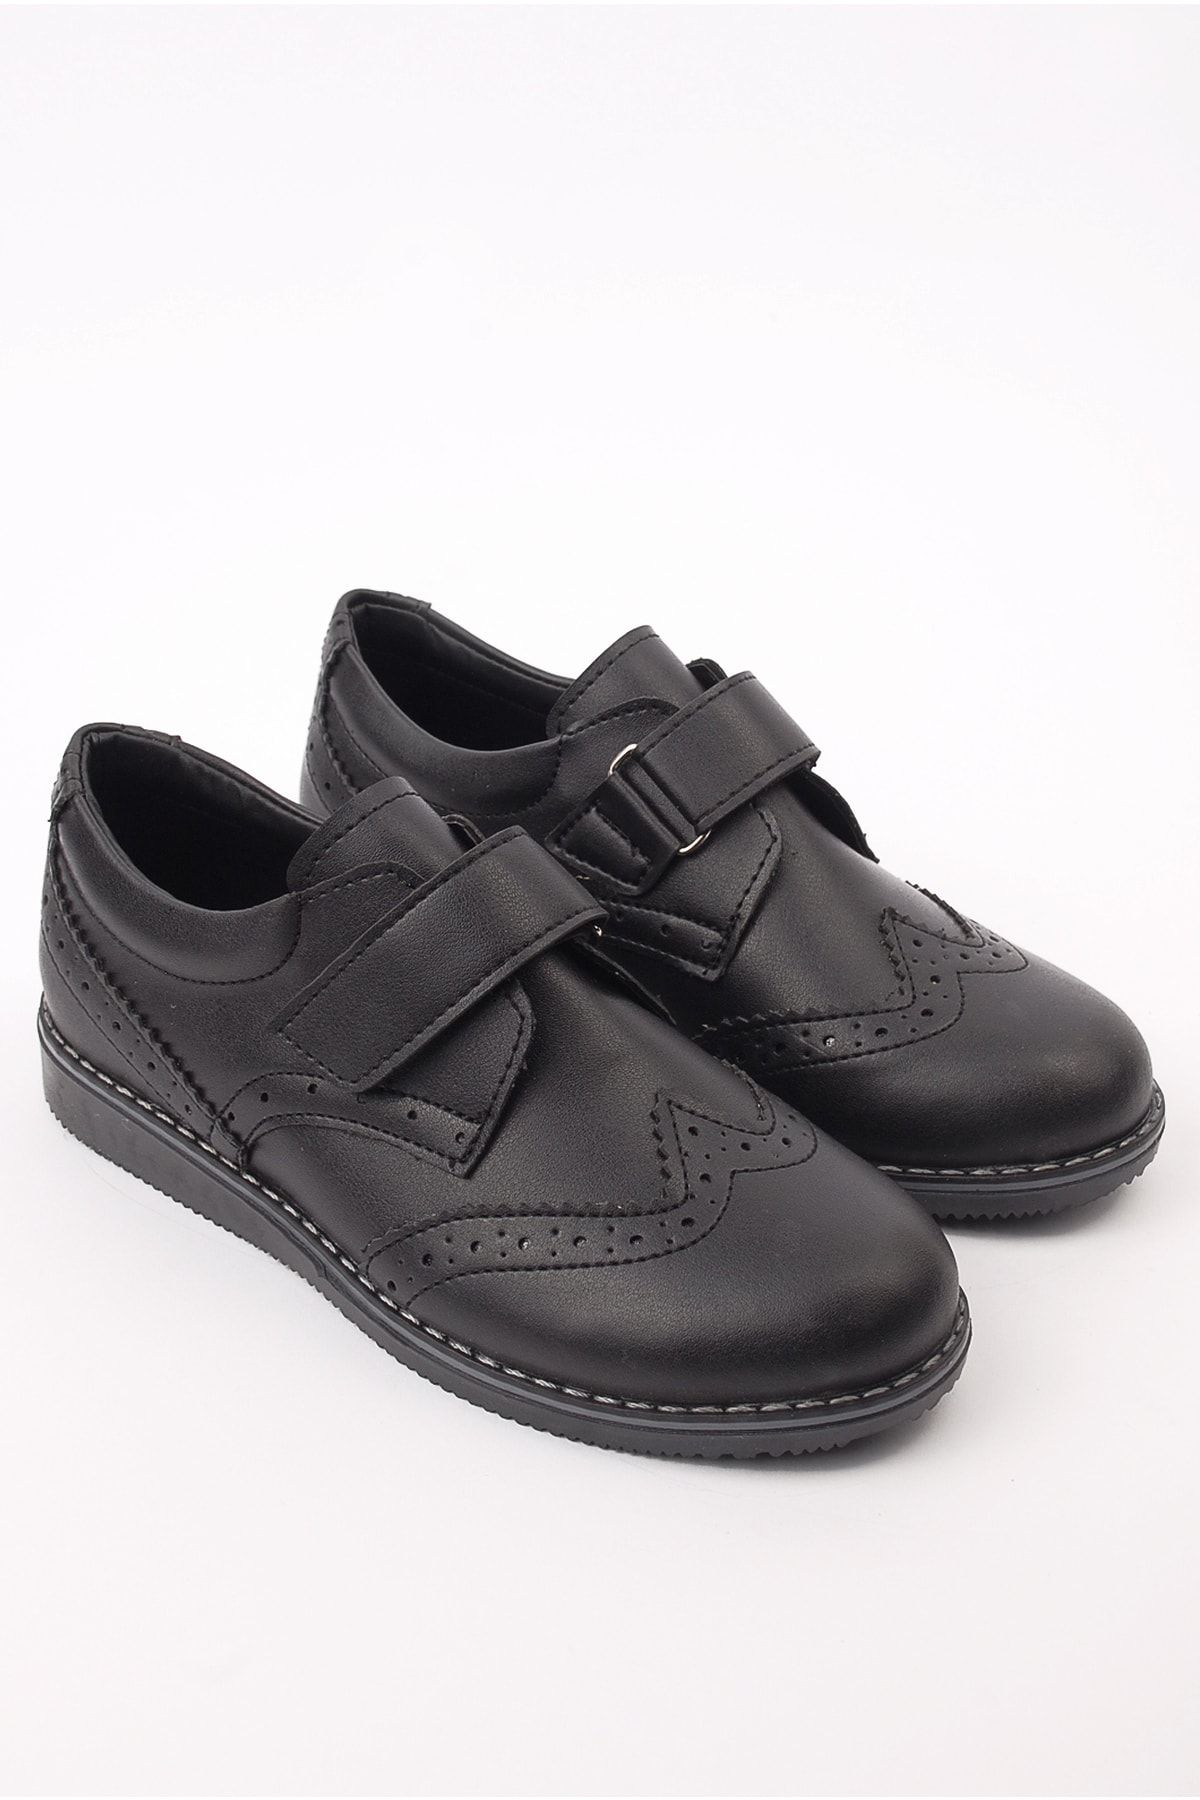 Minican Erkek Çocuk Siyah Cilt Cırtlı Günlük Ayakkabı